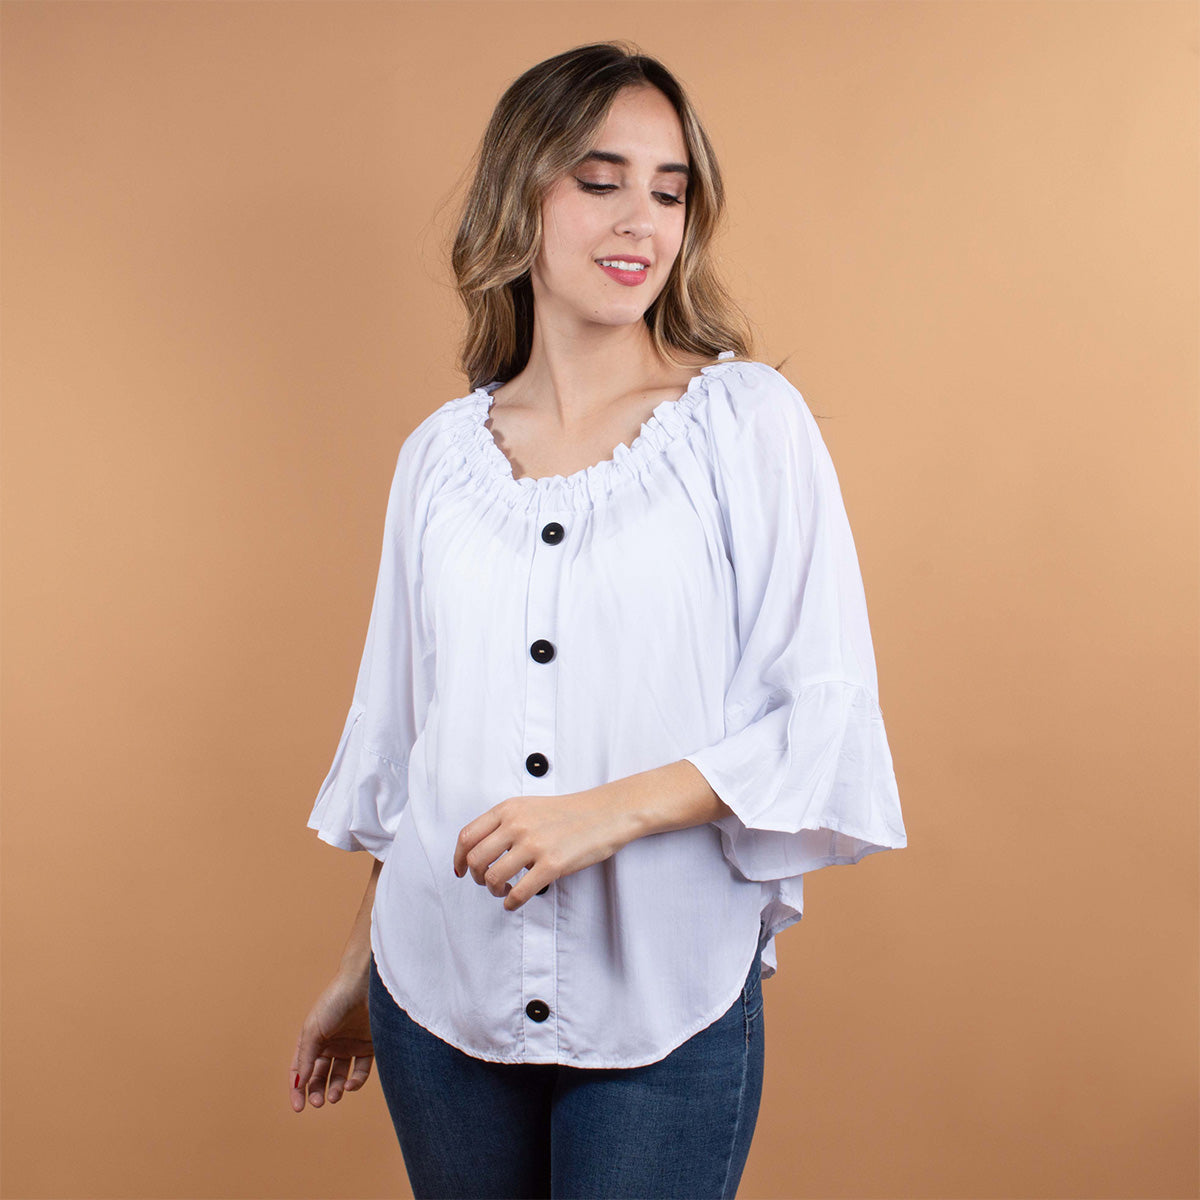 Blusa color blanco con botones y manga larga